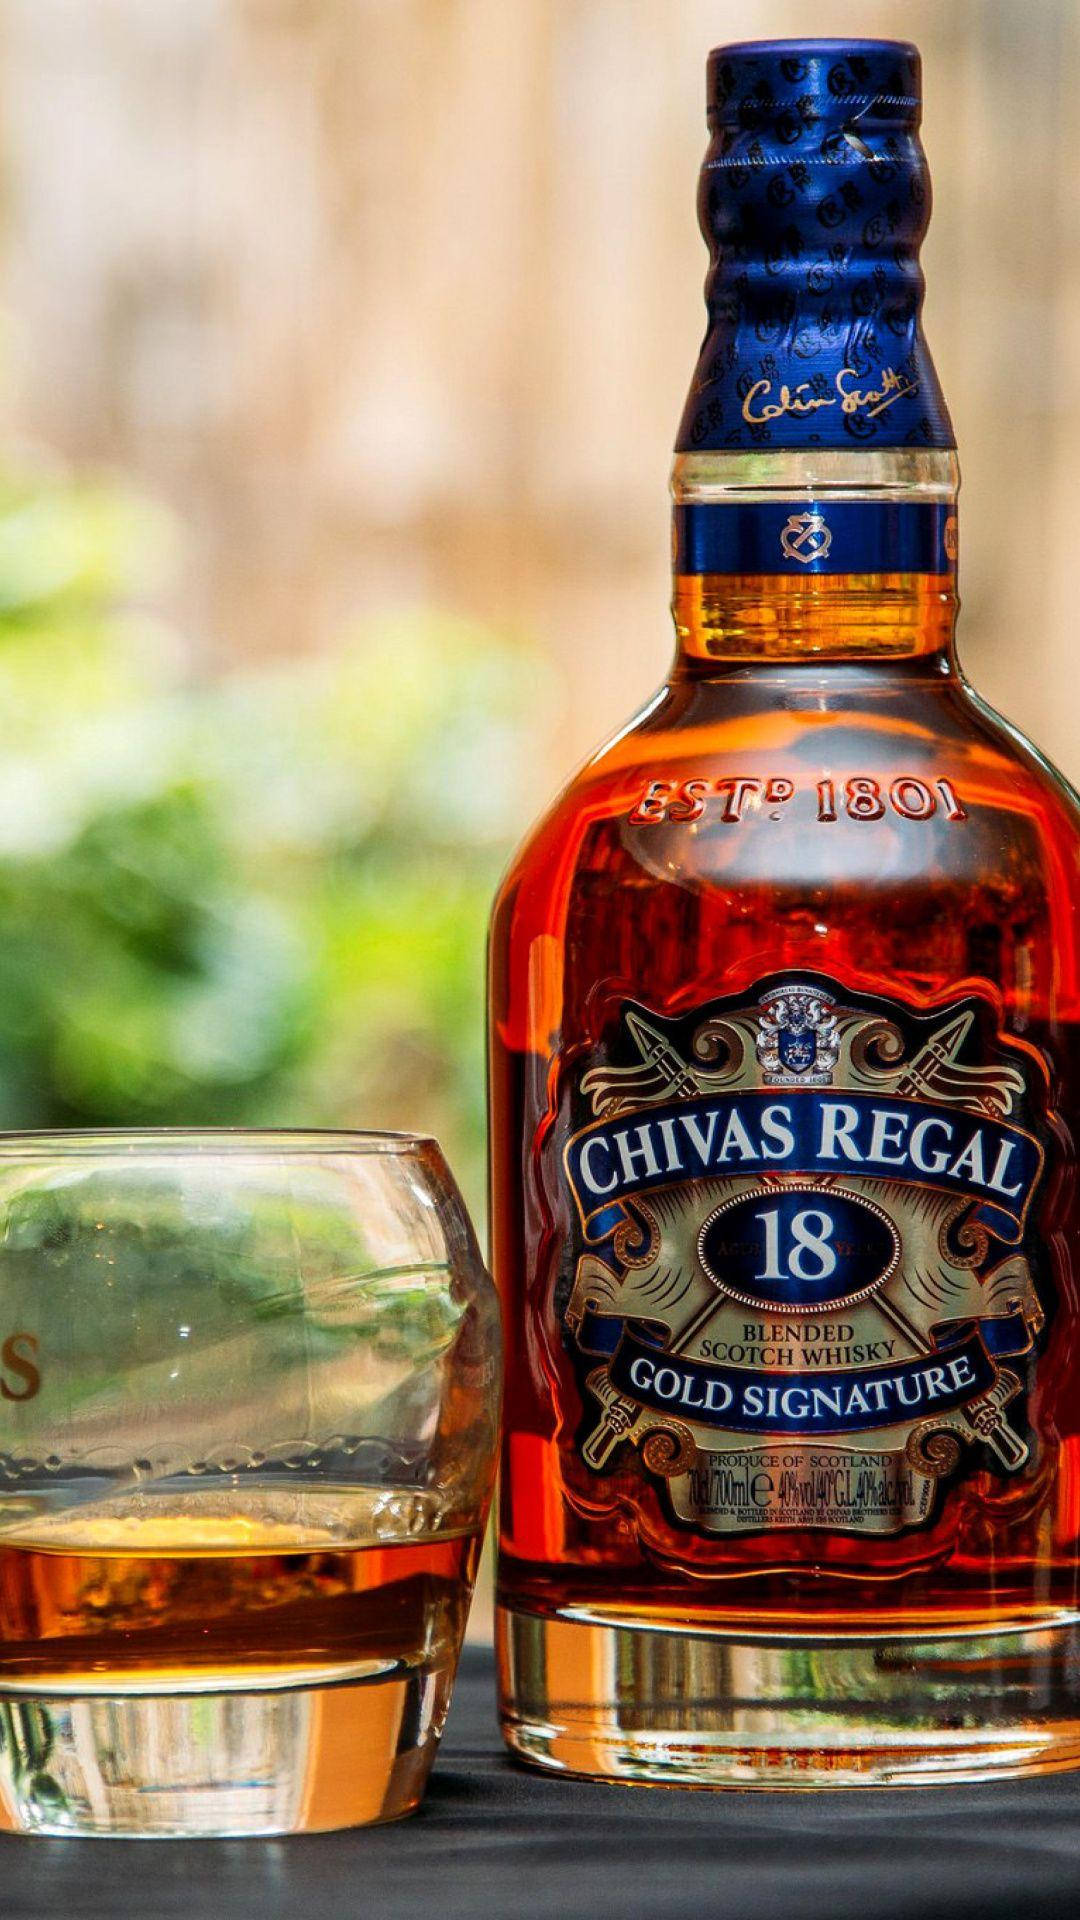 Porträtvon Chivas Regal Whisky Wallpaper